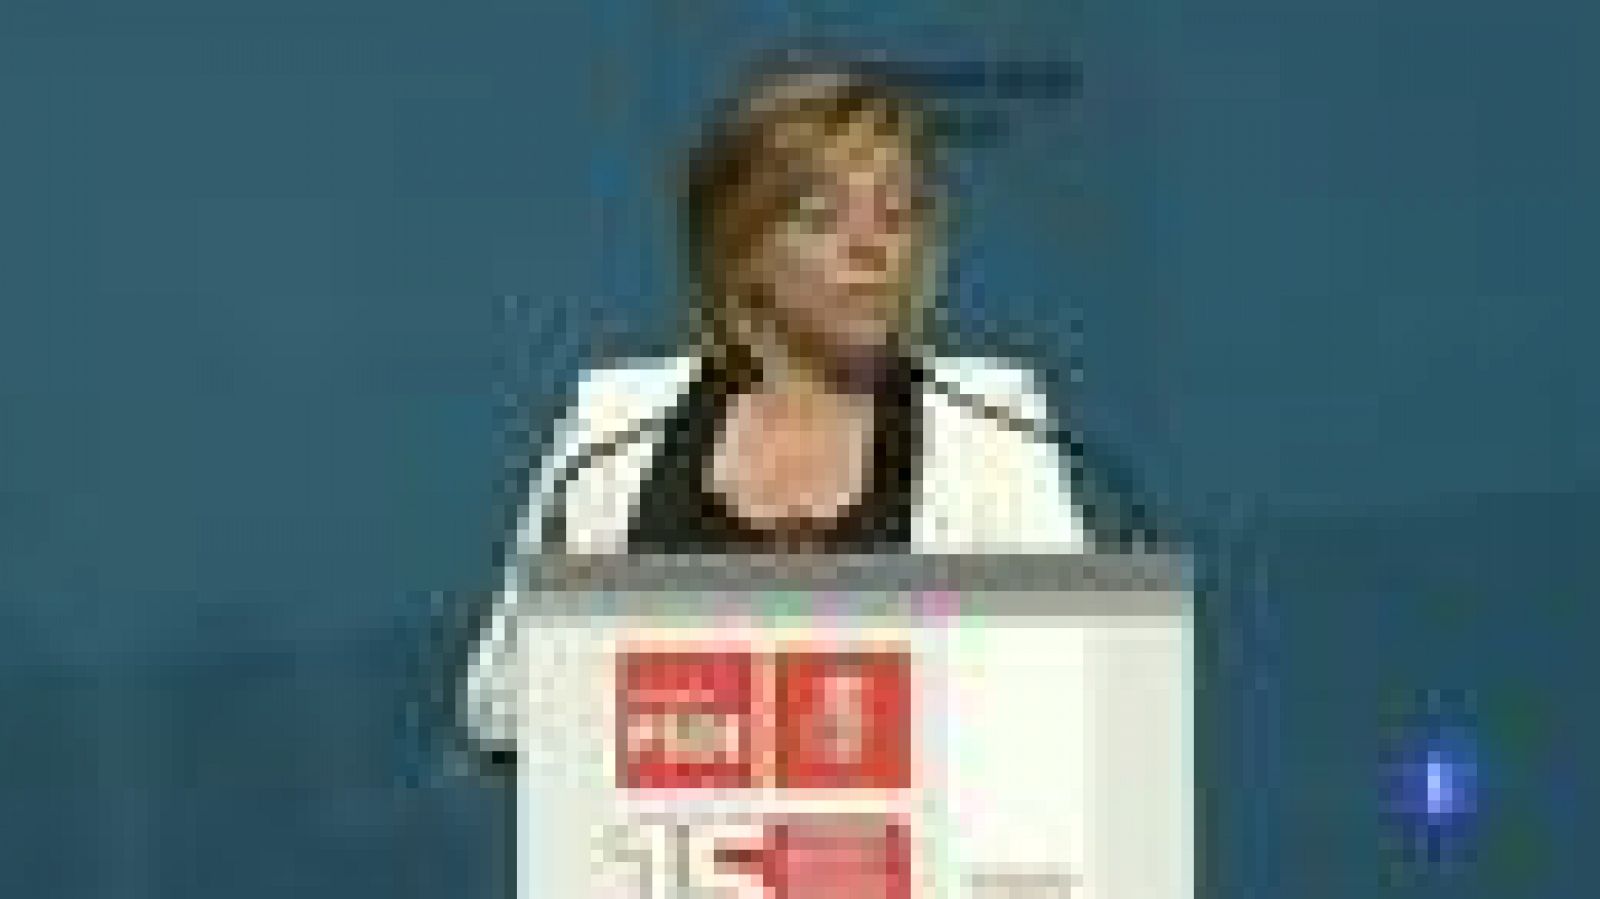     La vicesecretaria general del PSOE, Elena Valenciano, ha advertido  este domingo de que "la receta de Rajoy" para salir de la crisis  económica "nos lleva al fracaso", ya que "no sólo es dolorosa" sino  que es "desastrosa, injusta, ineficaz y sin alma". 